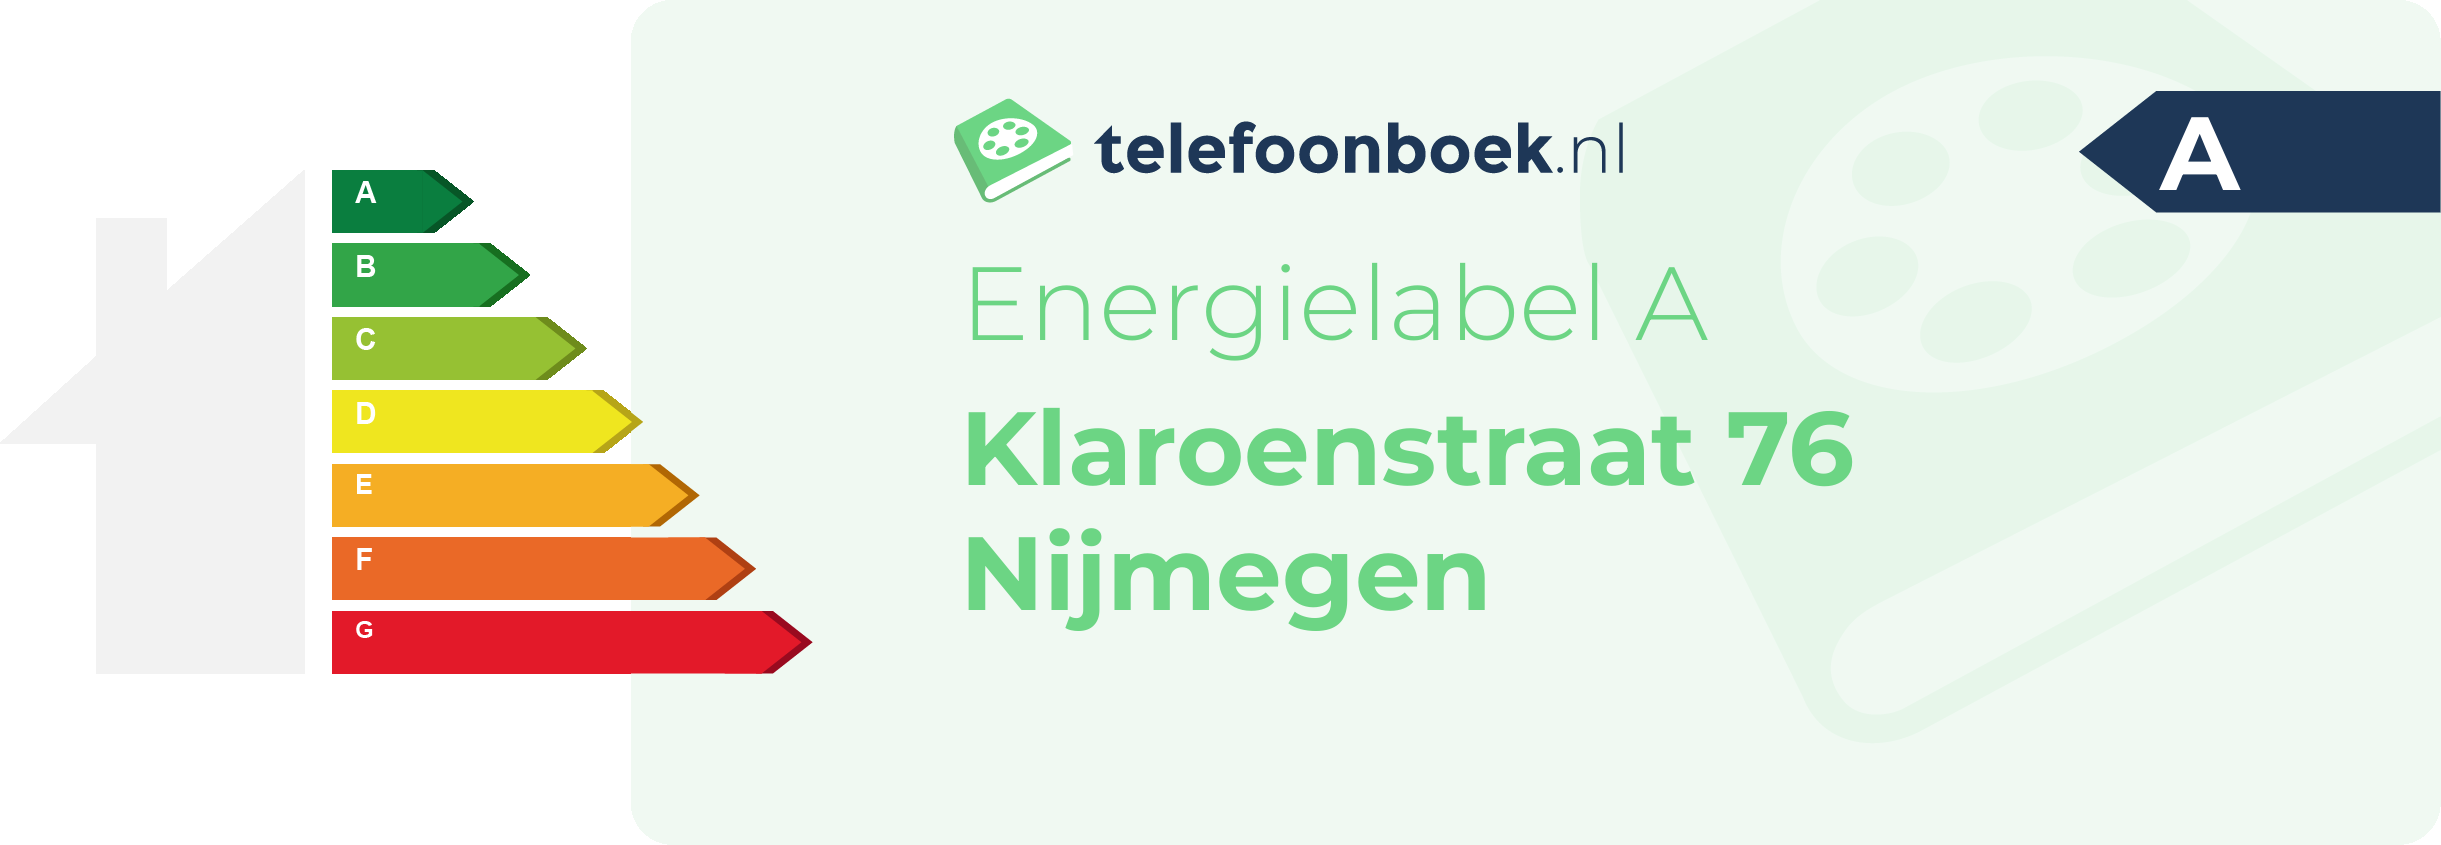 Energielabel Klaroenstraat 76 Nijmegen